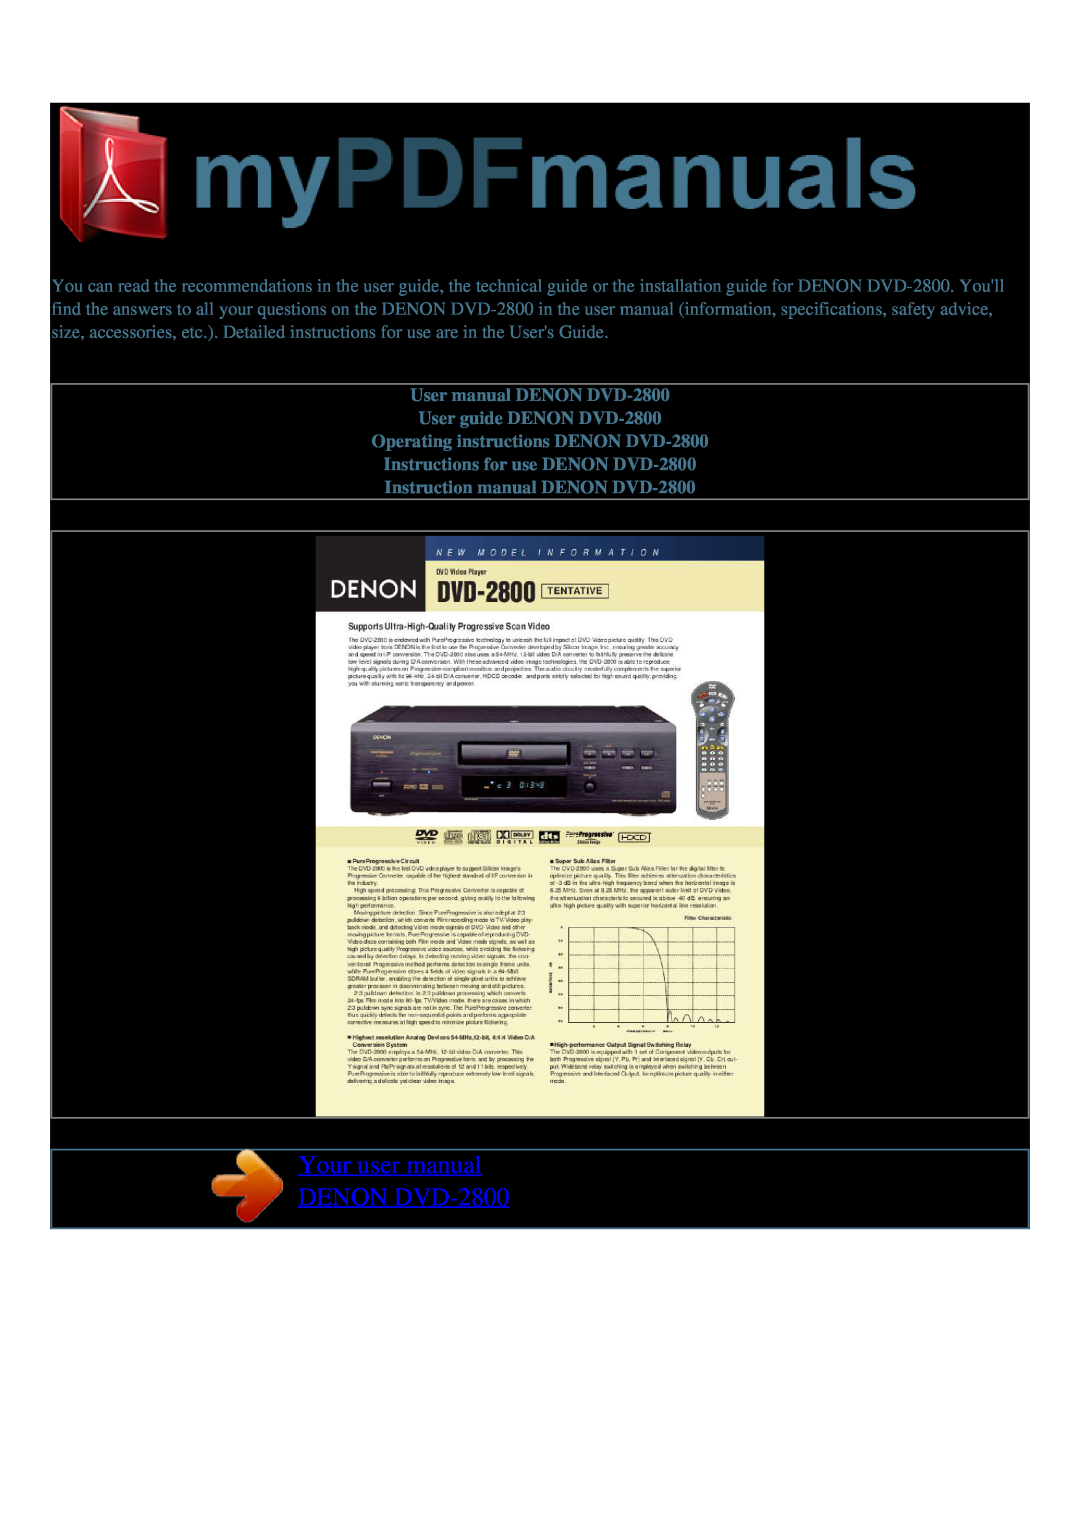 Denon user manual Your user manual DENON DVD-2800, User manual DENON DVD-2800 User guide DENON DVD-2800 